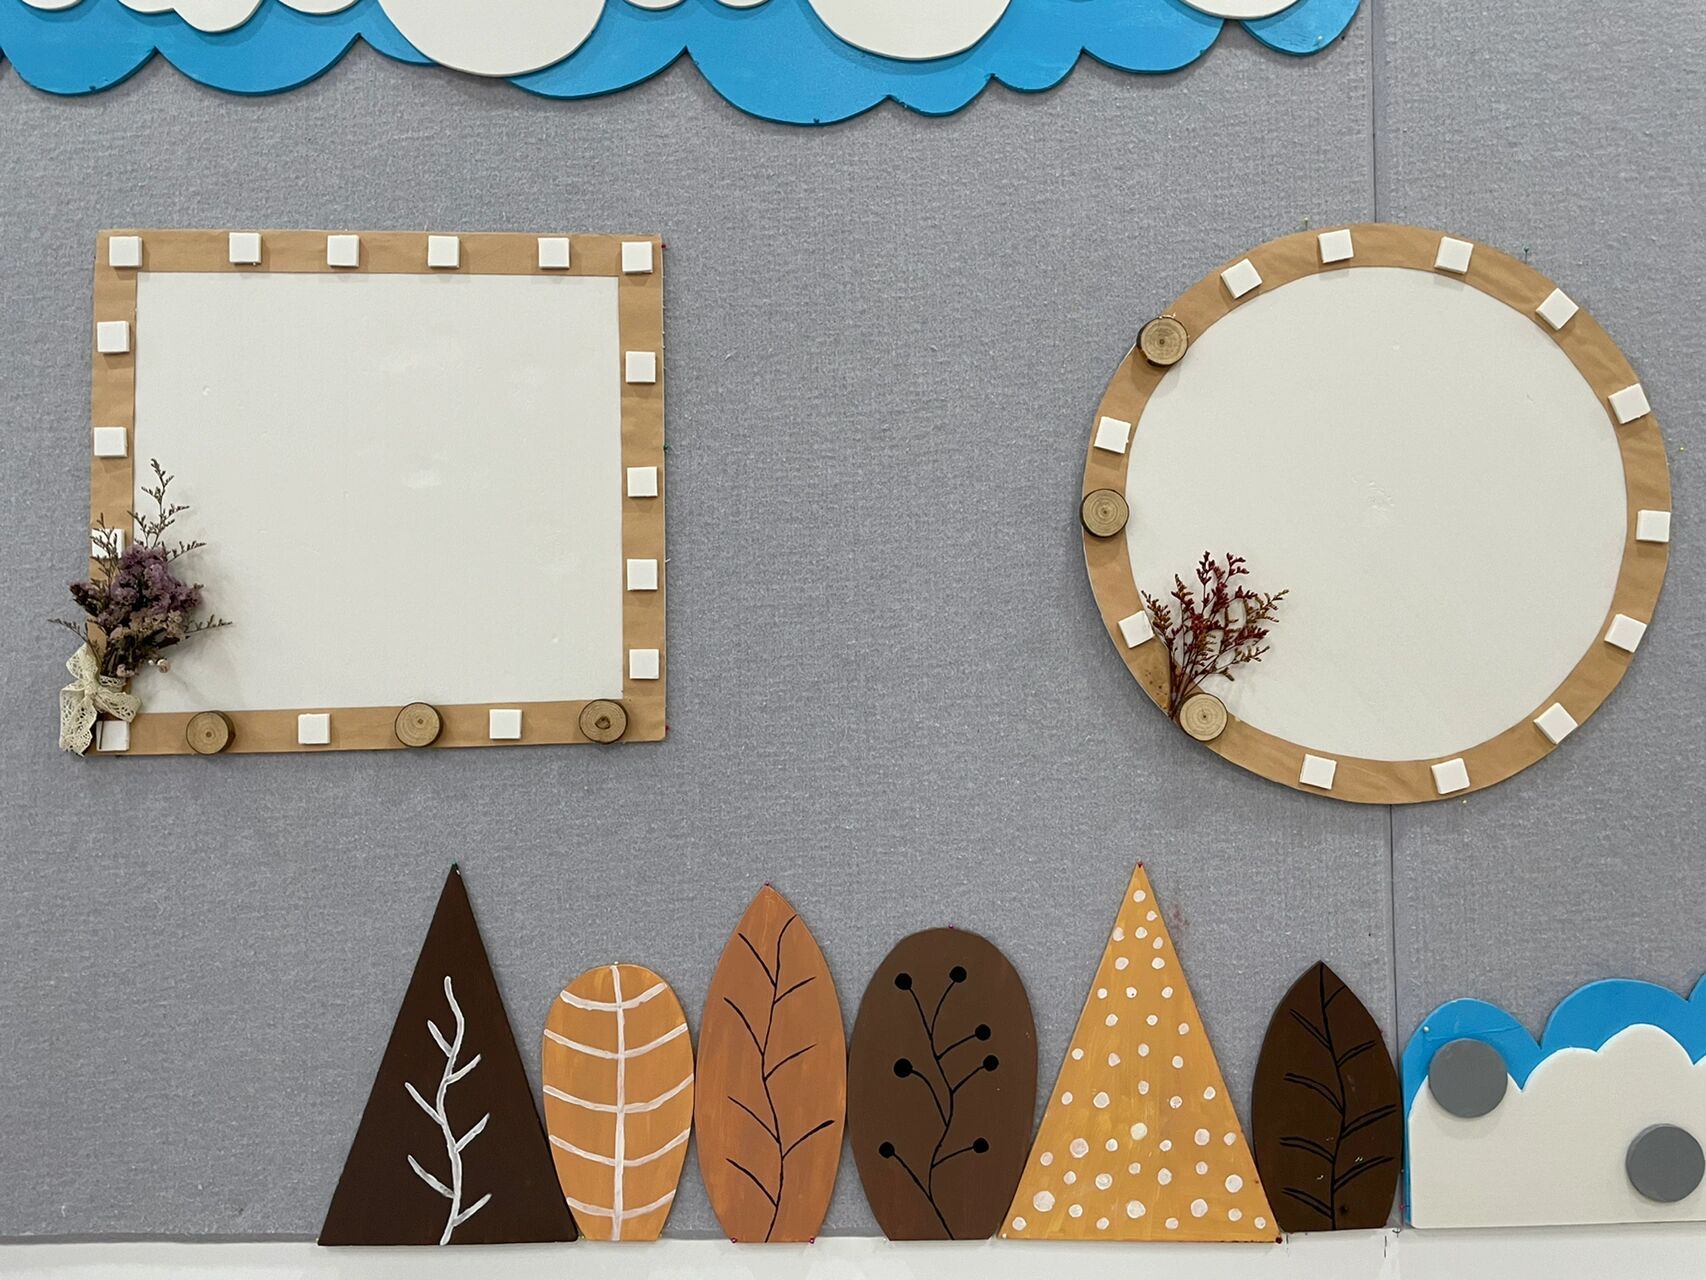 幼儿园纸皮创意边框图片